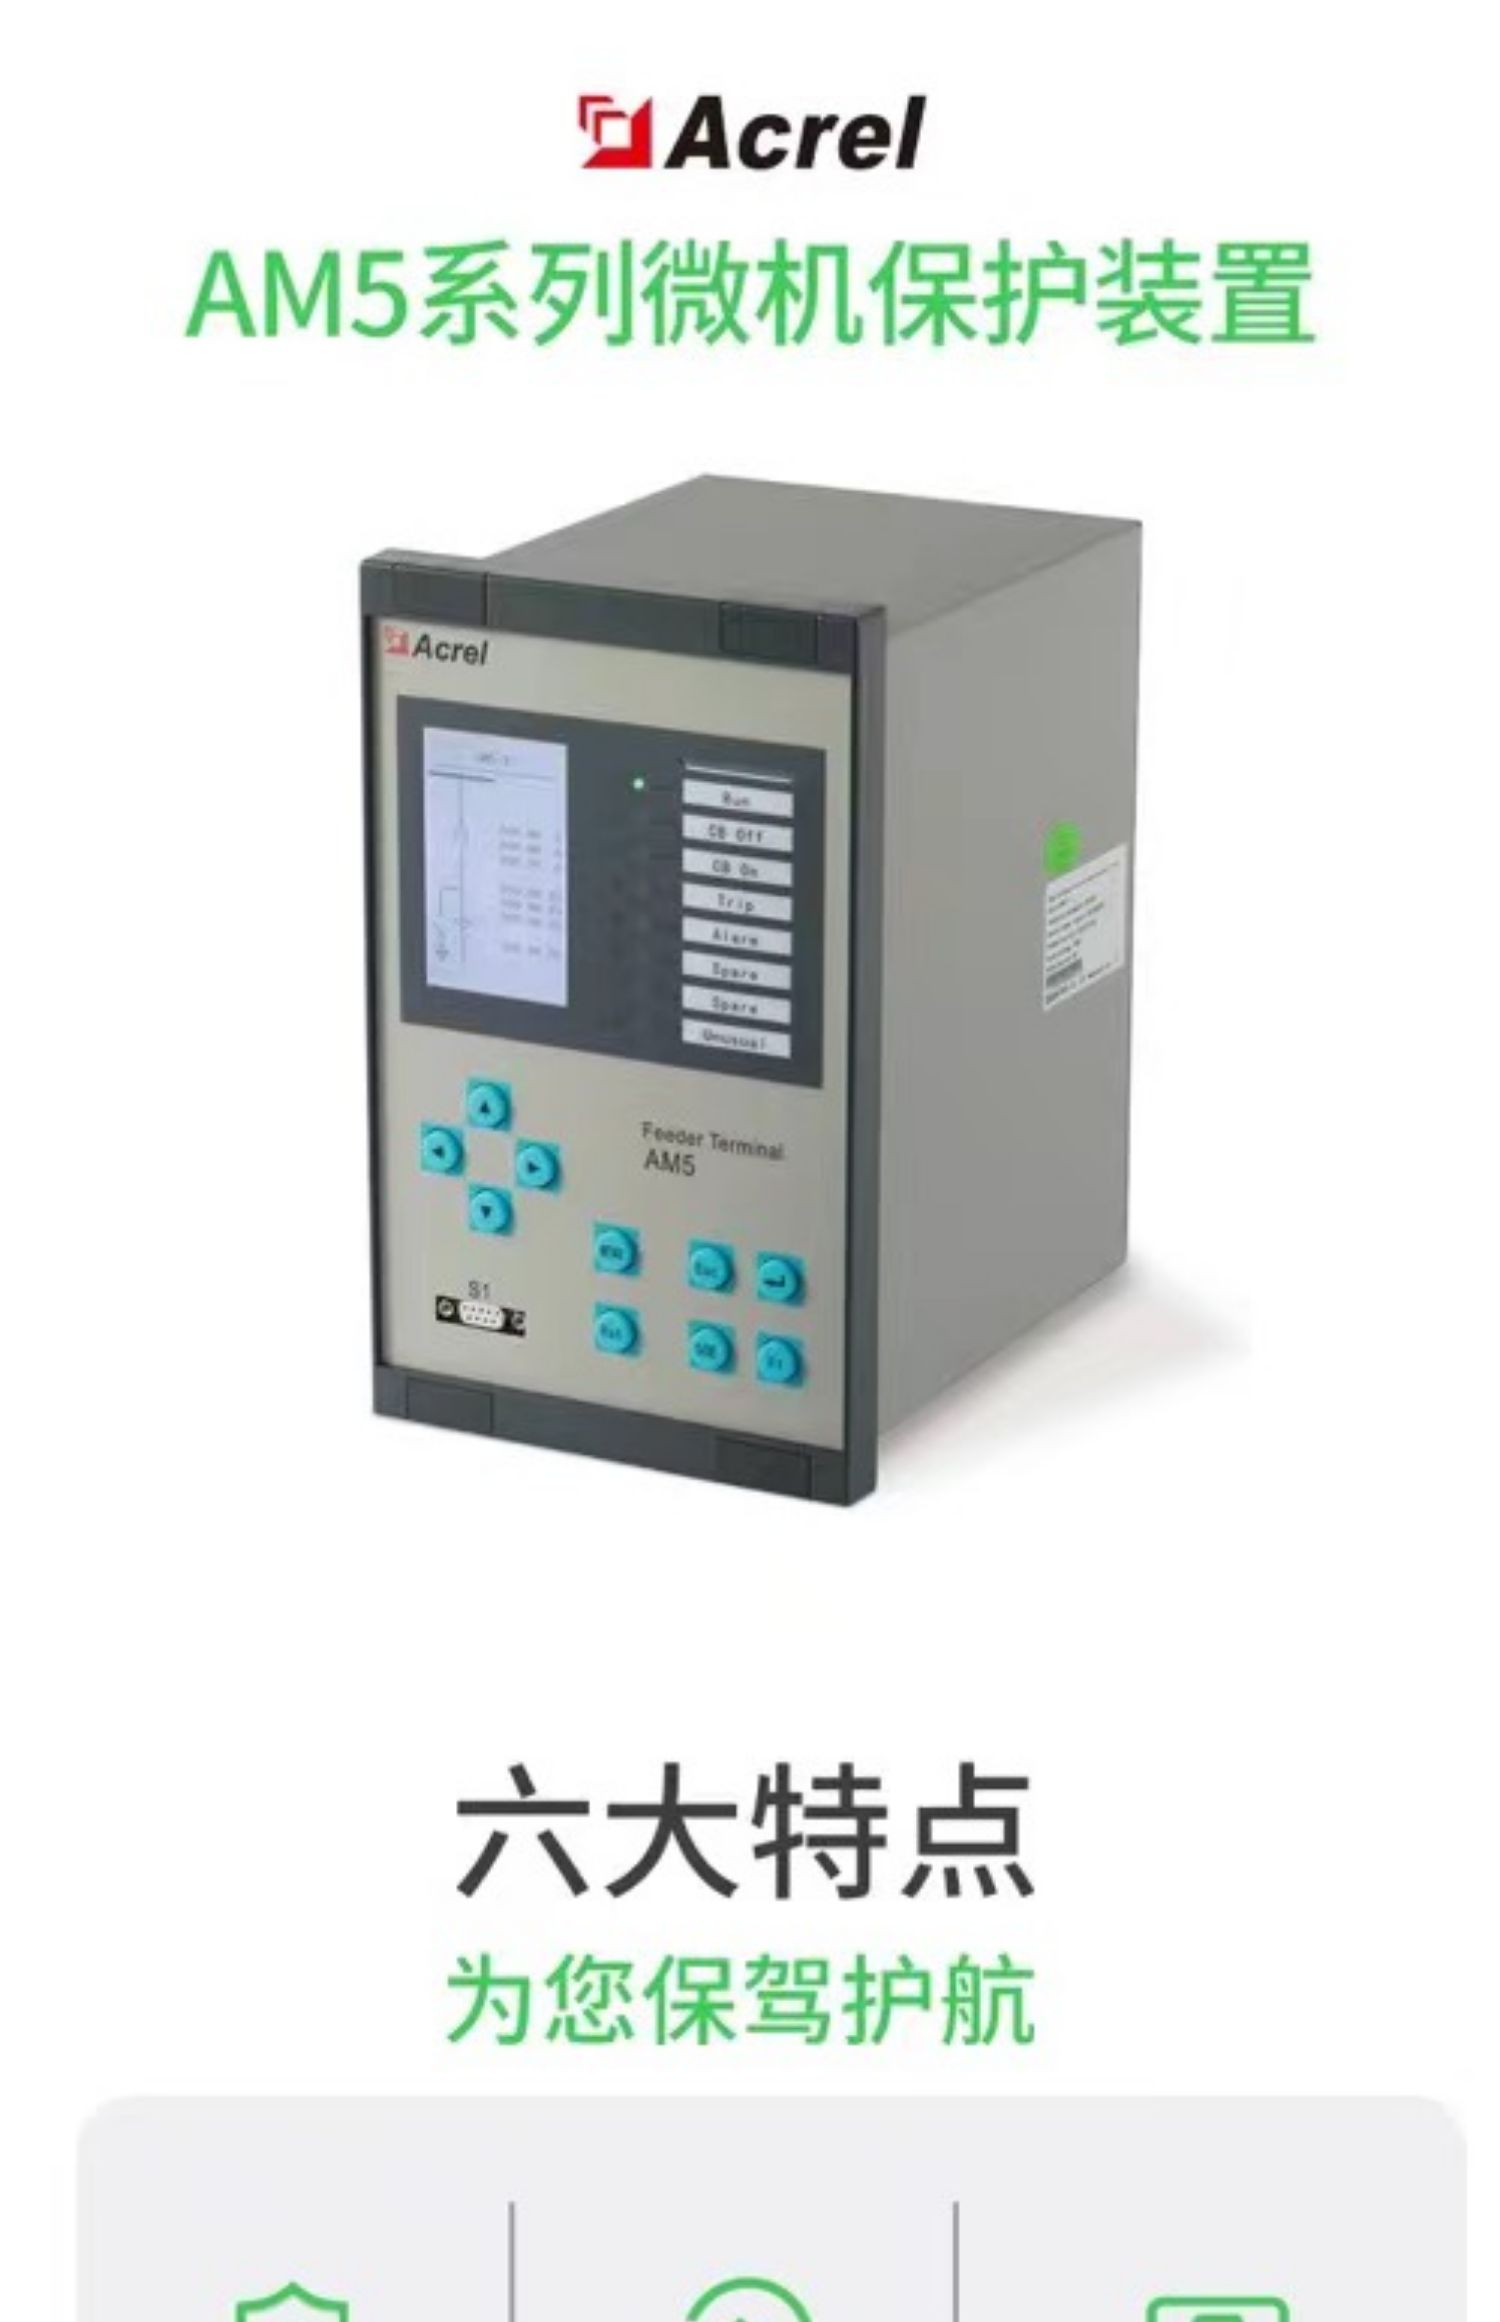 AM5-U1综保 PT检测装置 低电压过电压警告